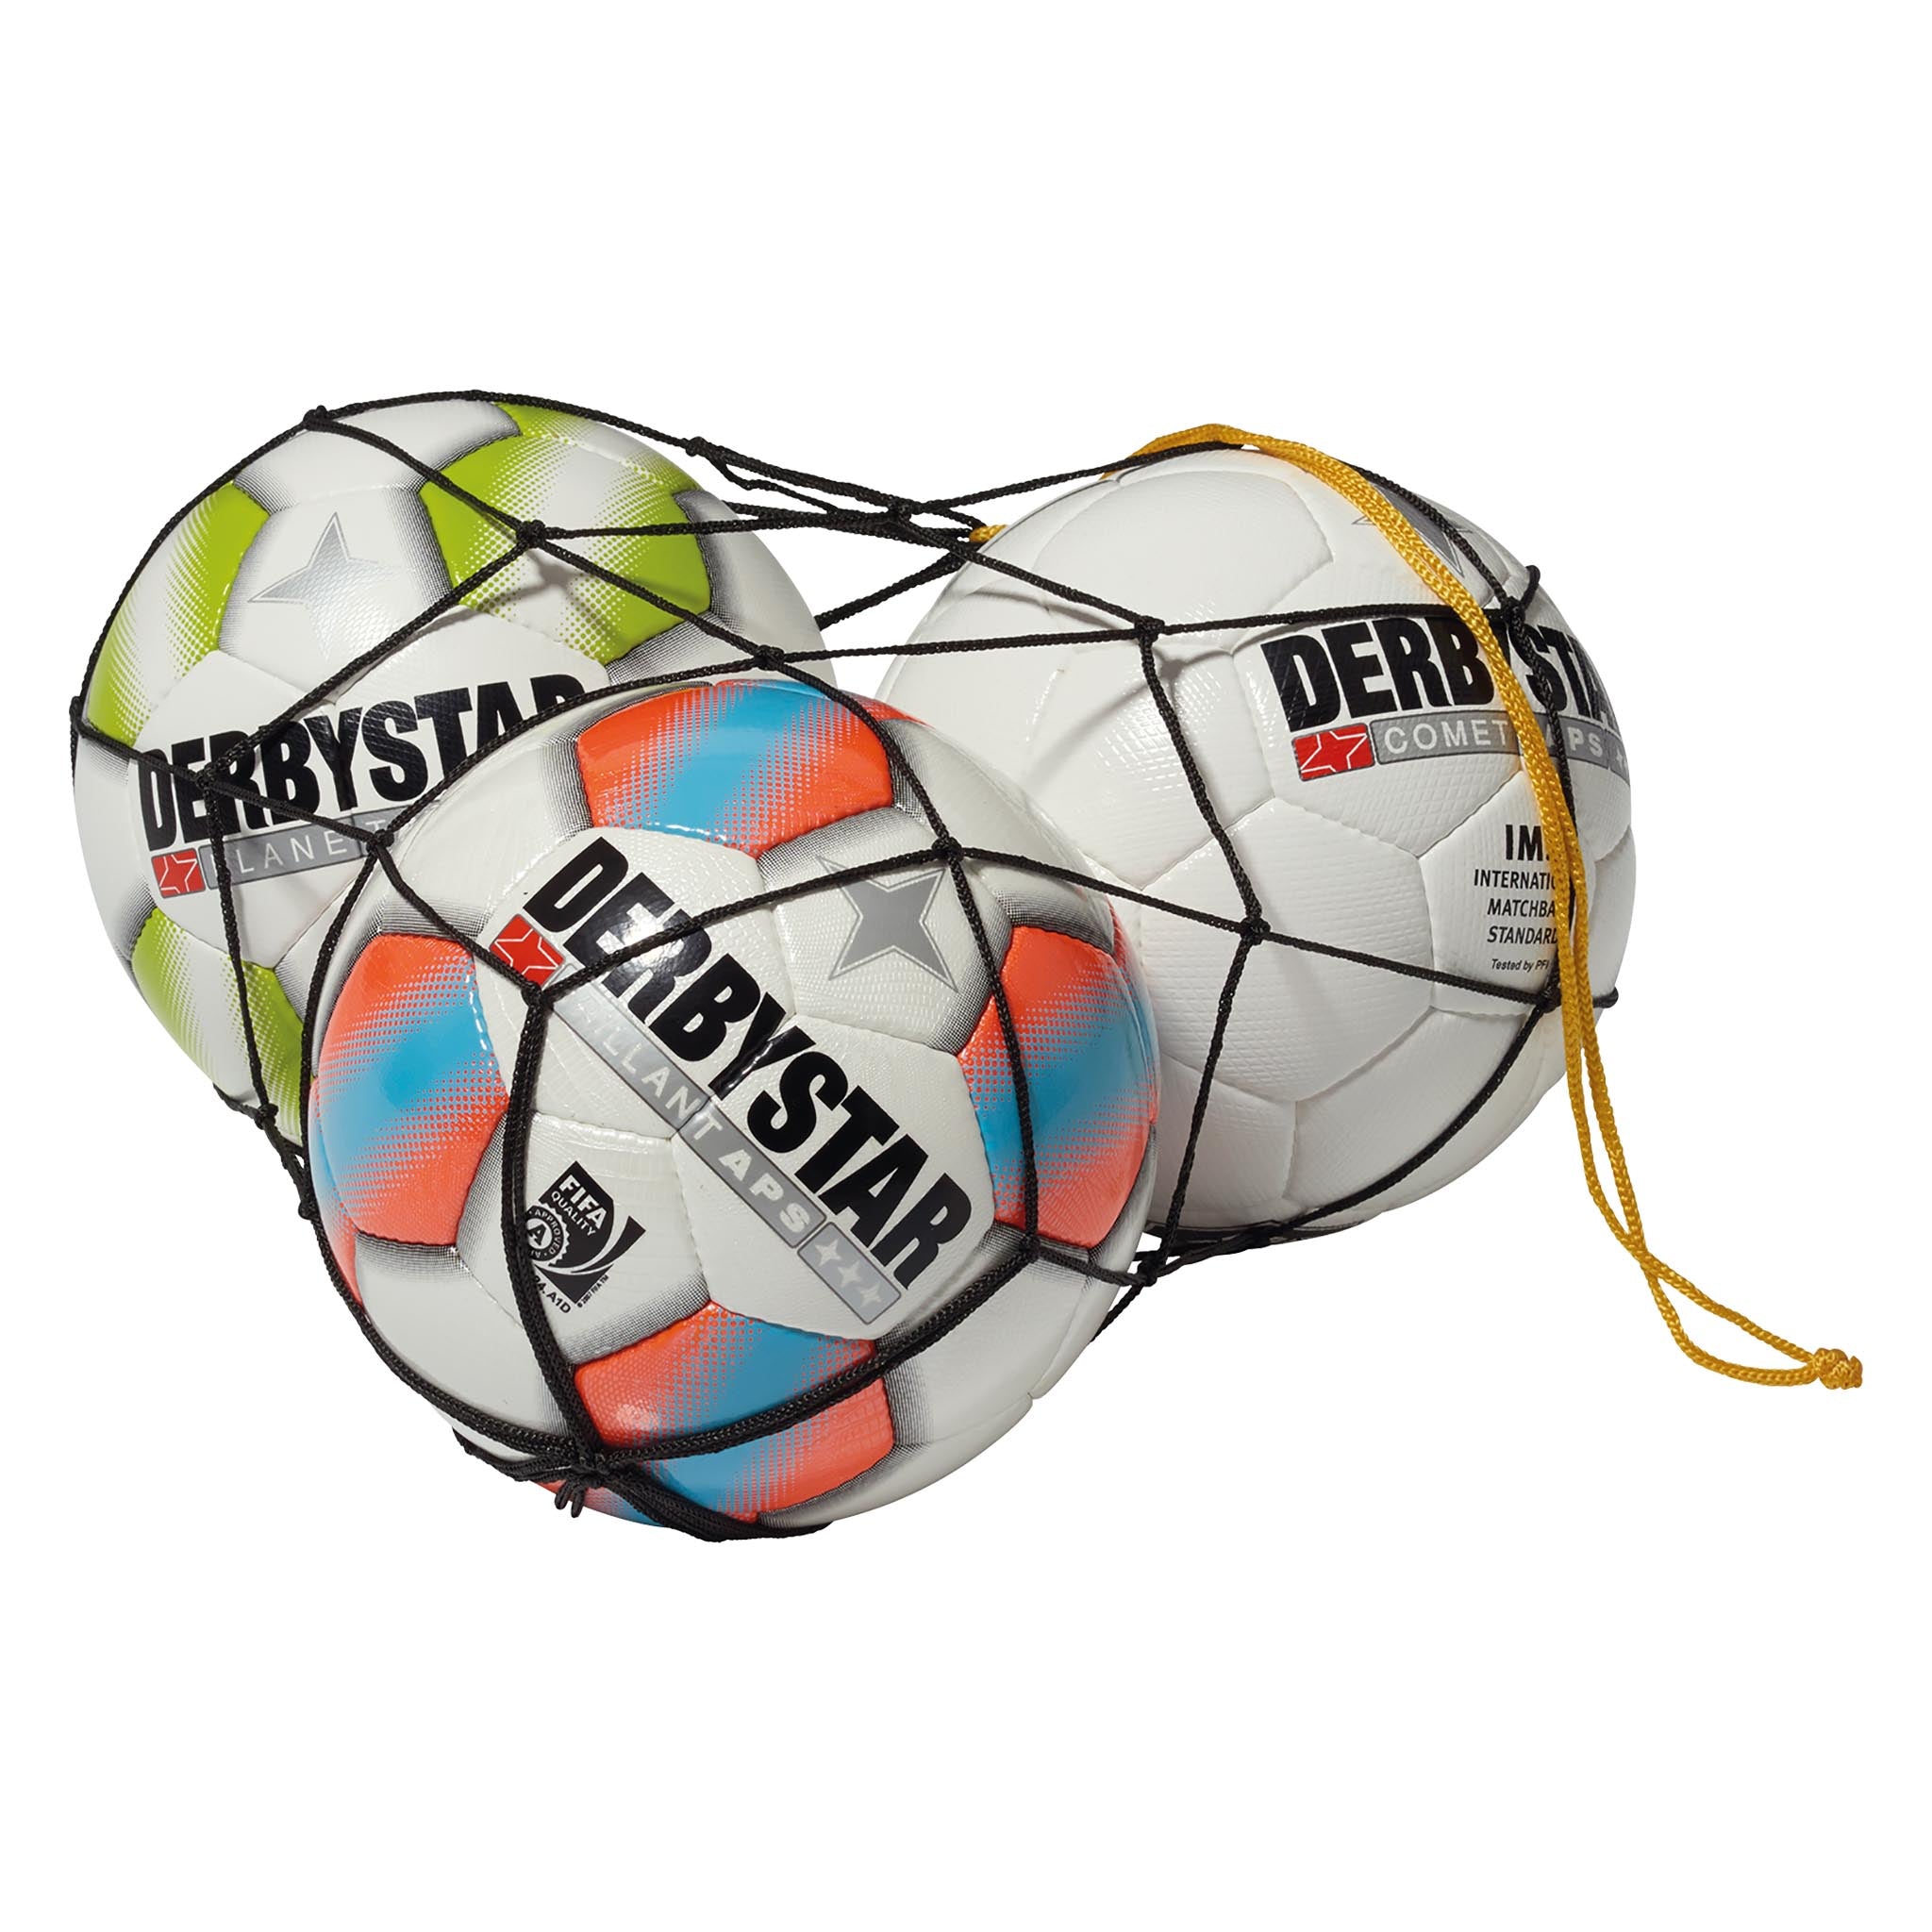 Ballons pour intérieur Derbystar Apus Light Futsal